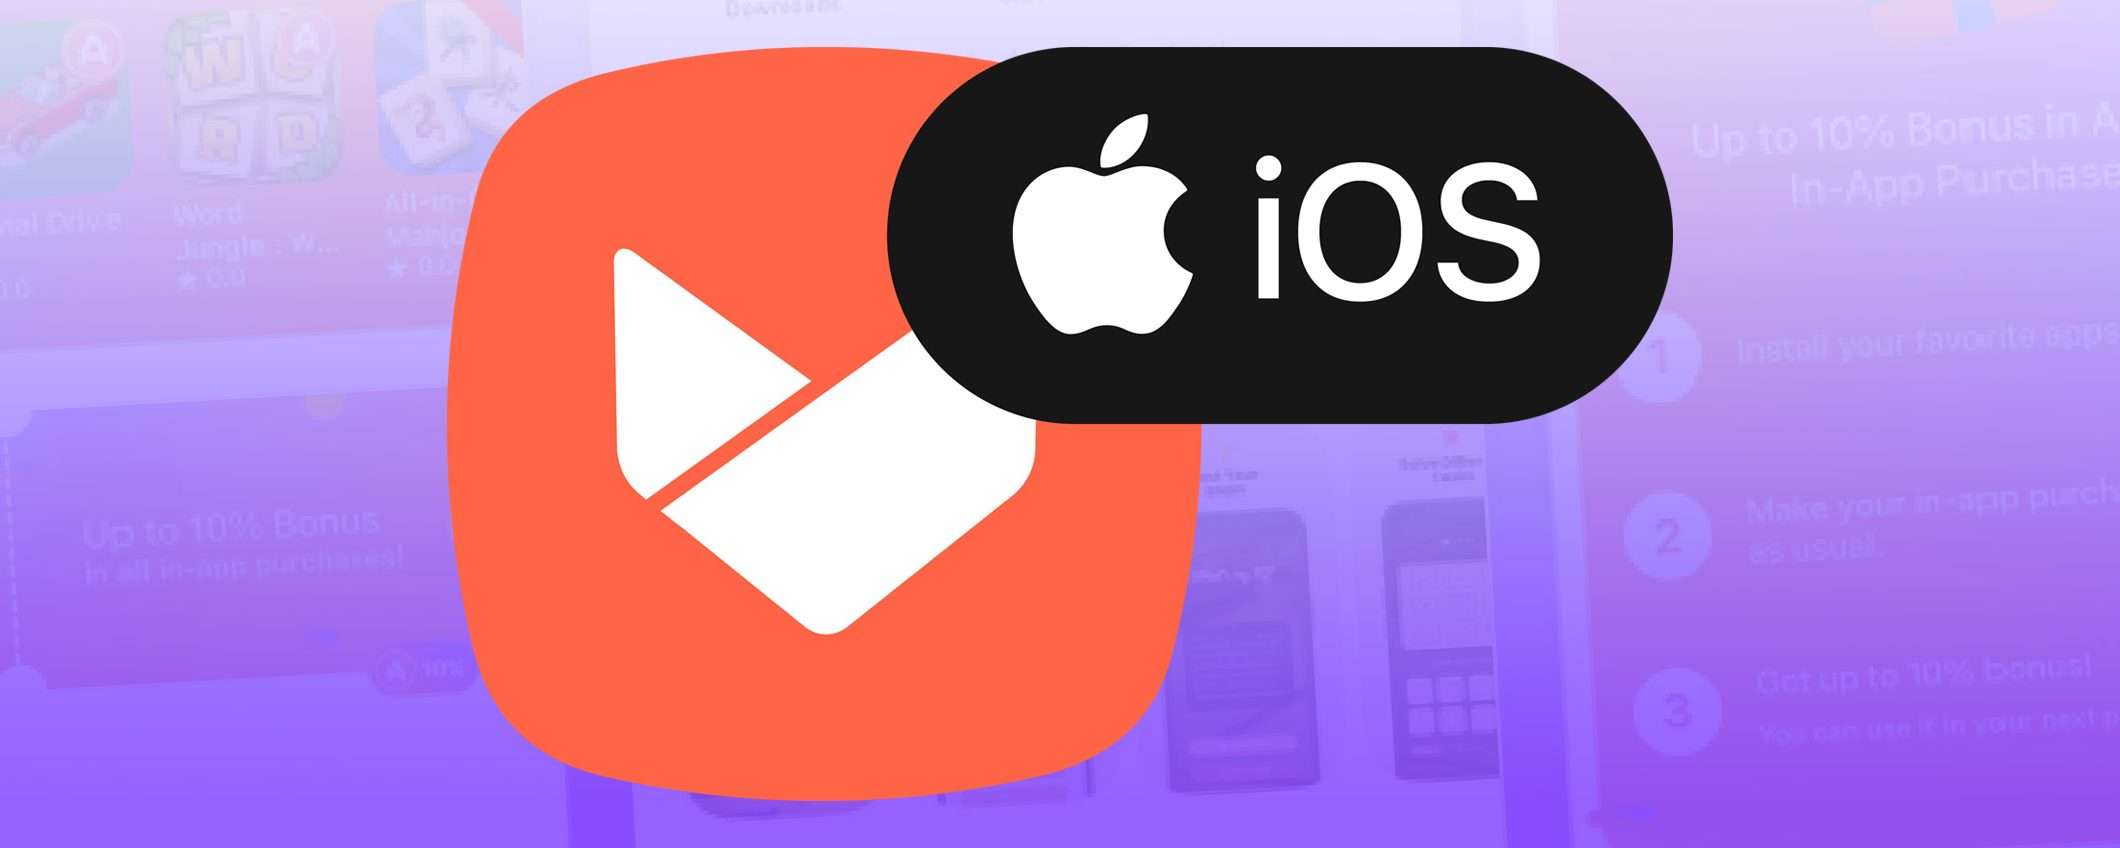 Aptoide: conto alla rovescia per il nuovo store di app iOS